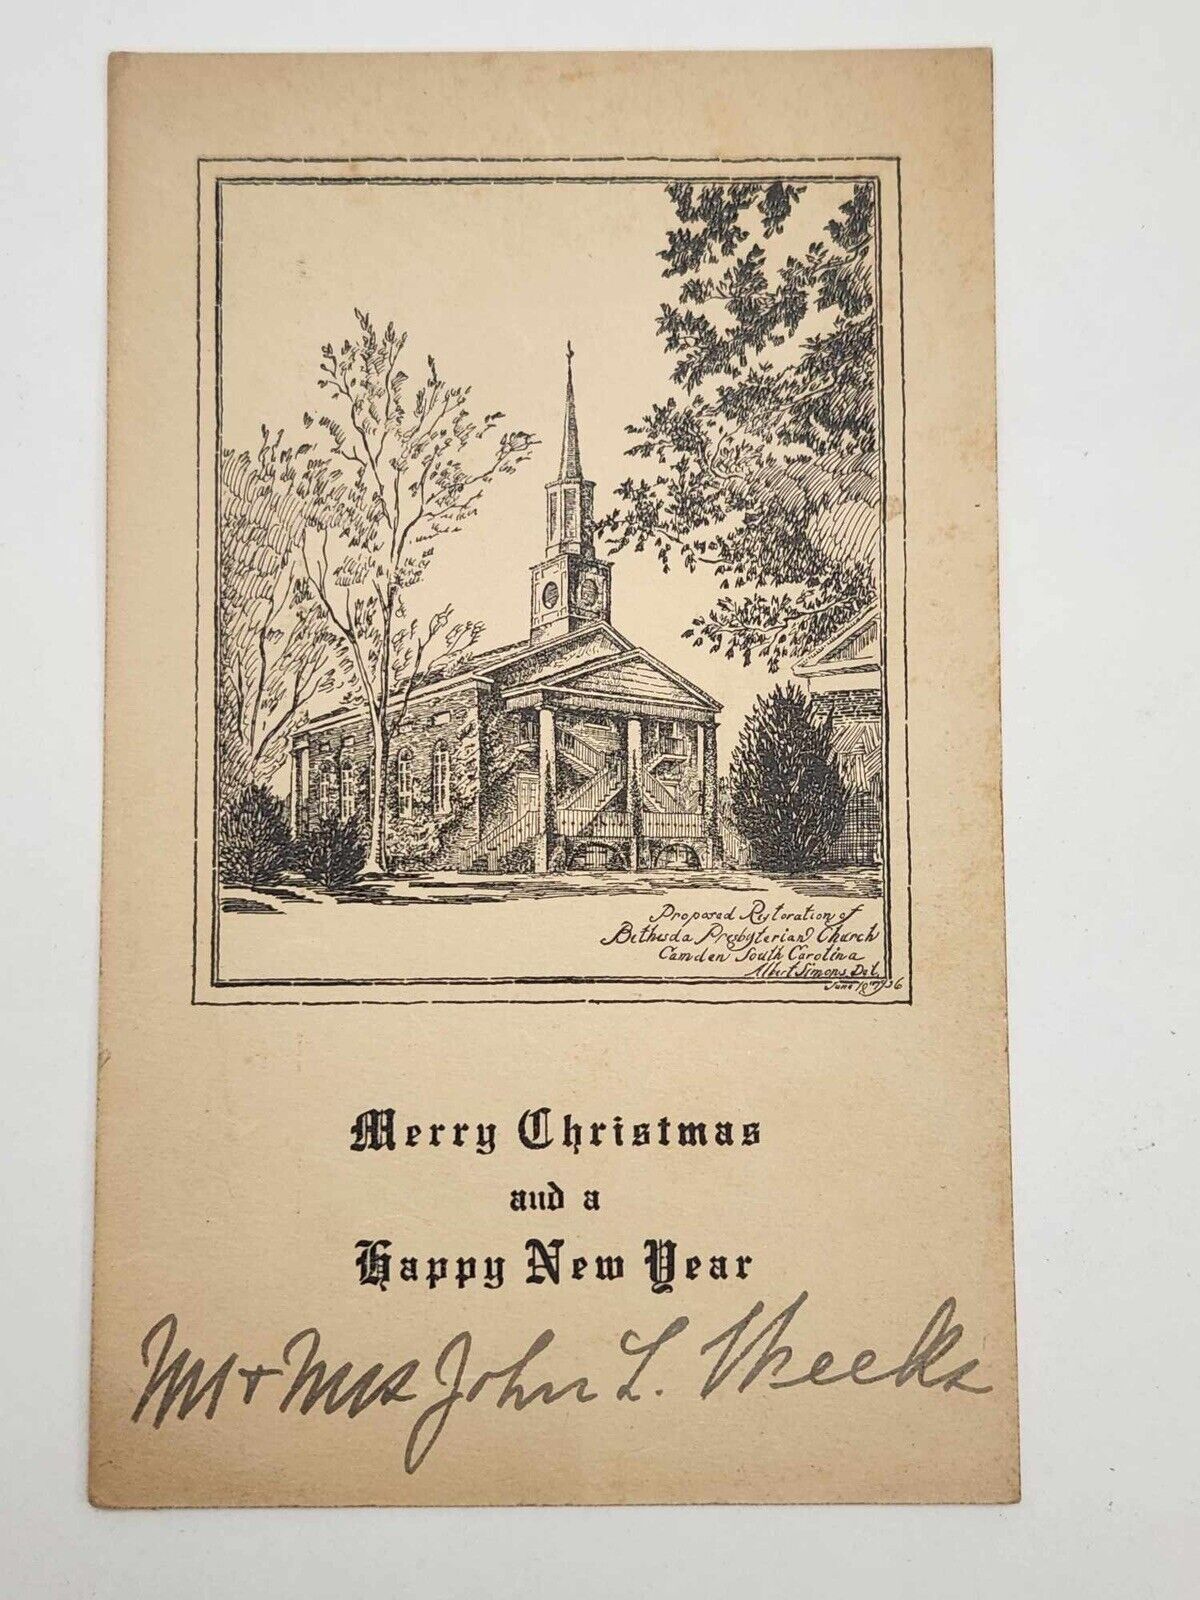 Bethesda Presbyterian Church Camden South Carolina 1936 Christmas Card 4 x 6.5in